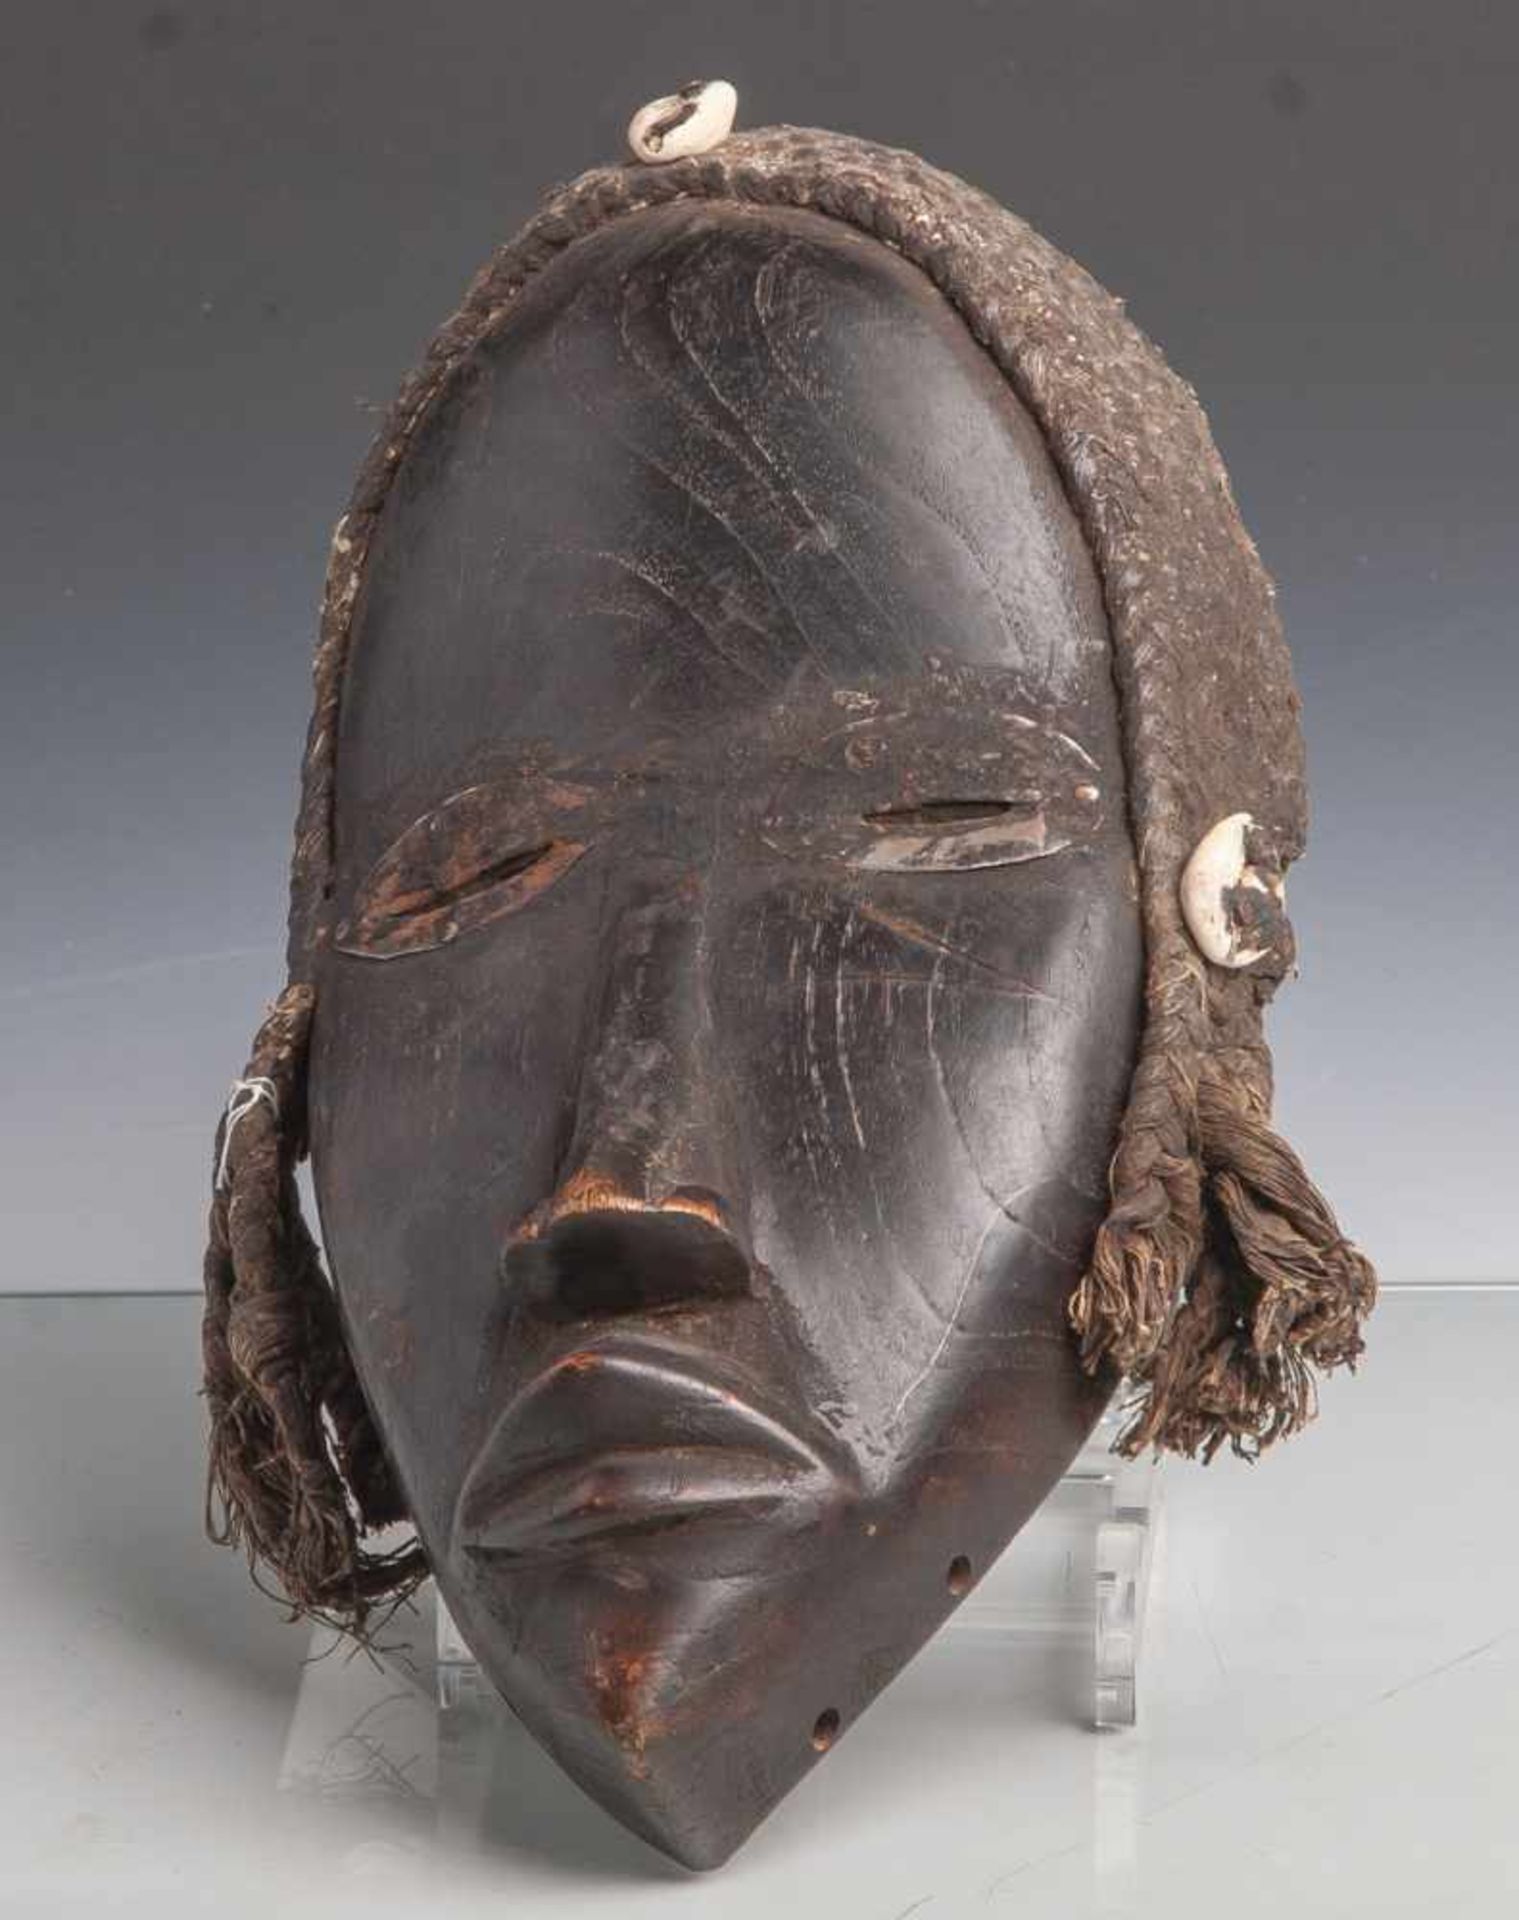 Rituelle Maske (Afrika), Menschliche Maske mit geschlitzten Augen, Holz geschnitzt, mitschwarzen